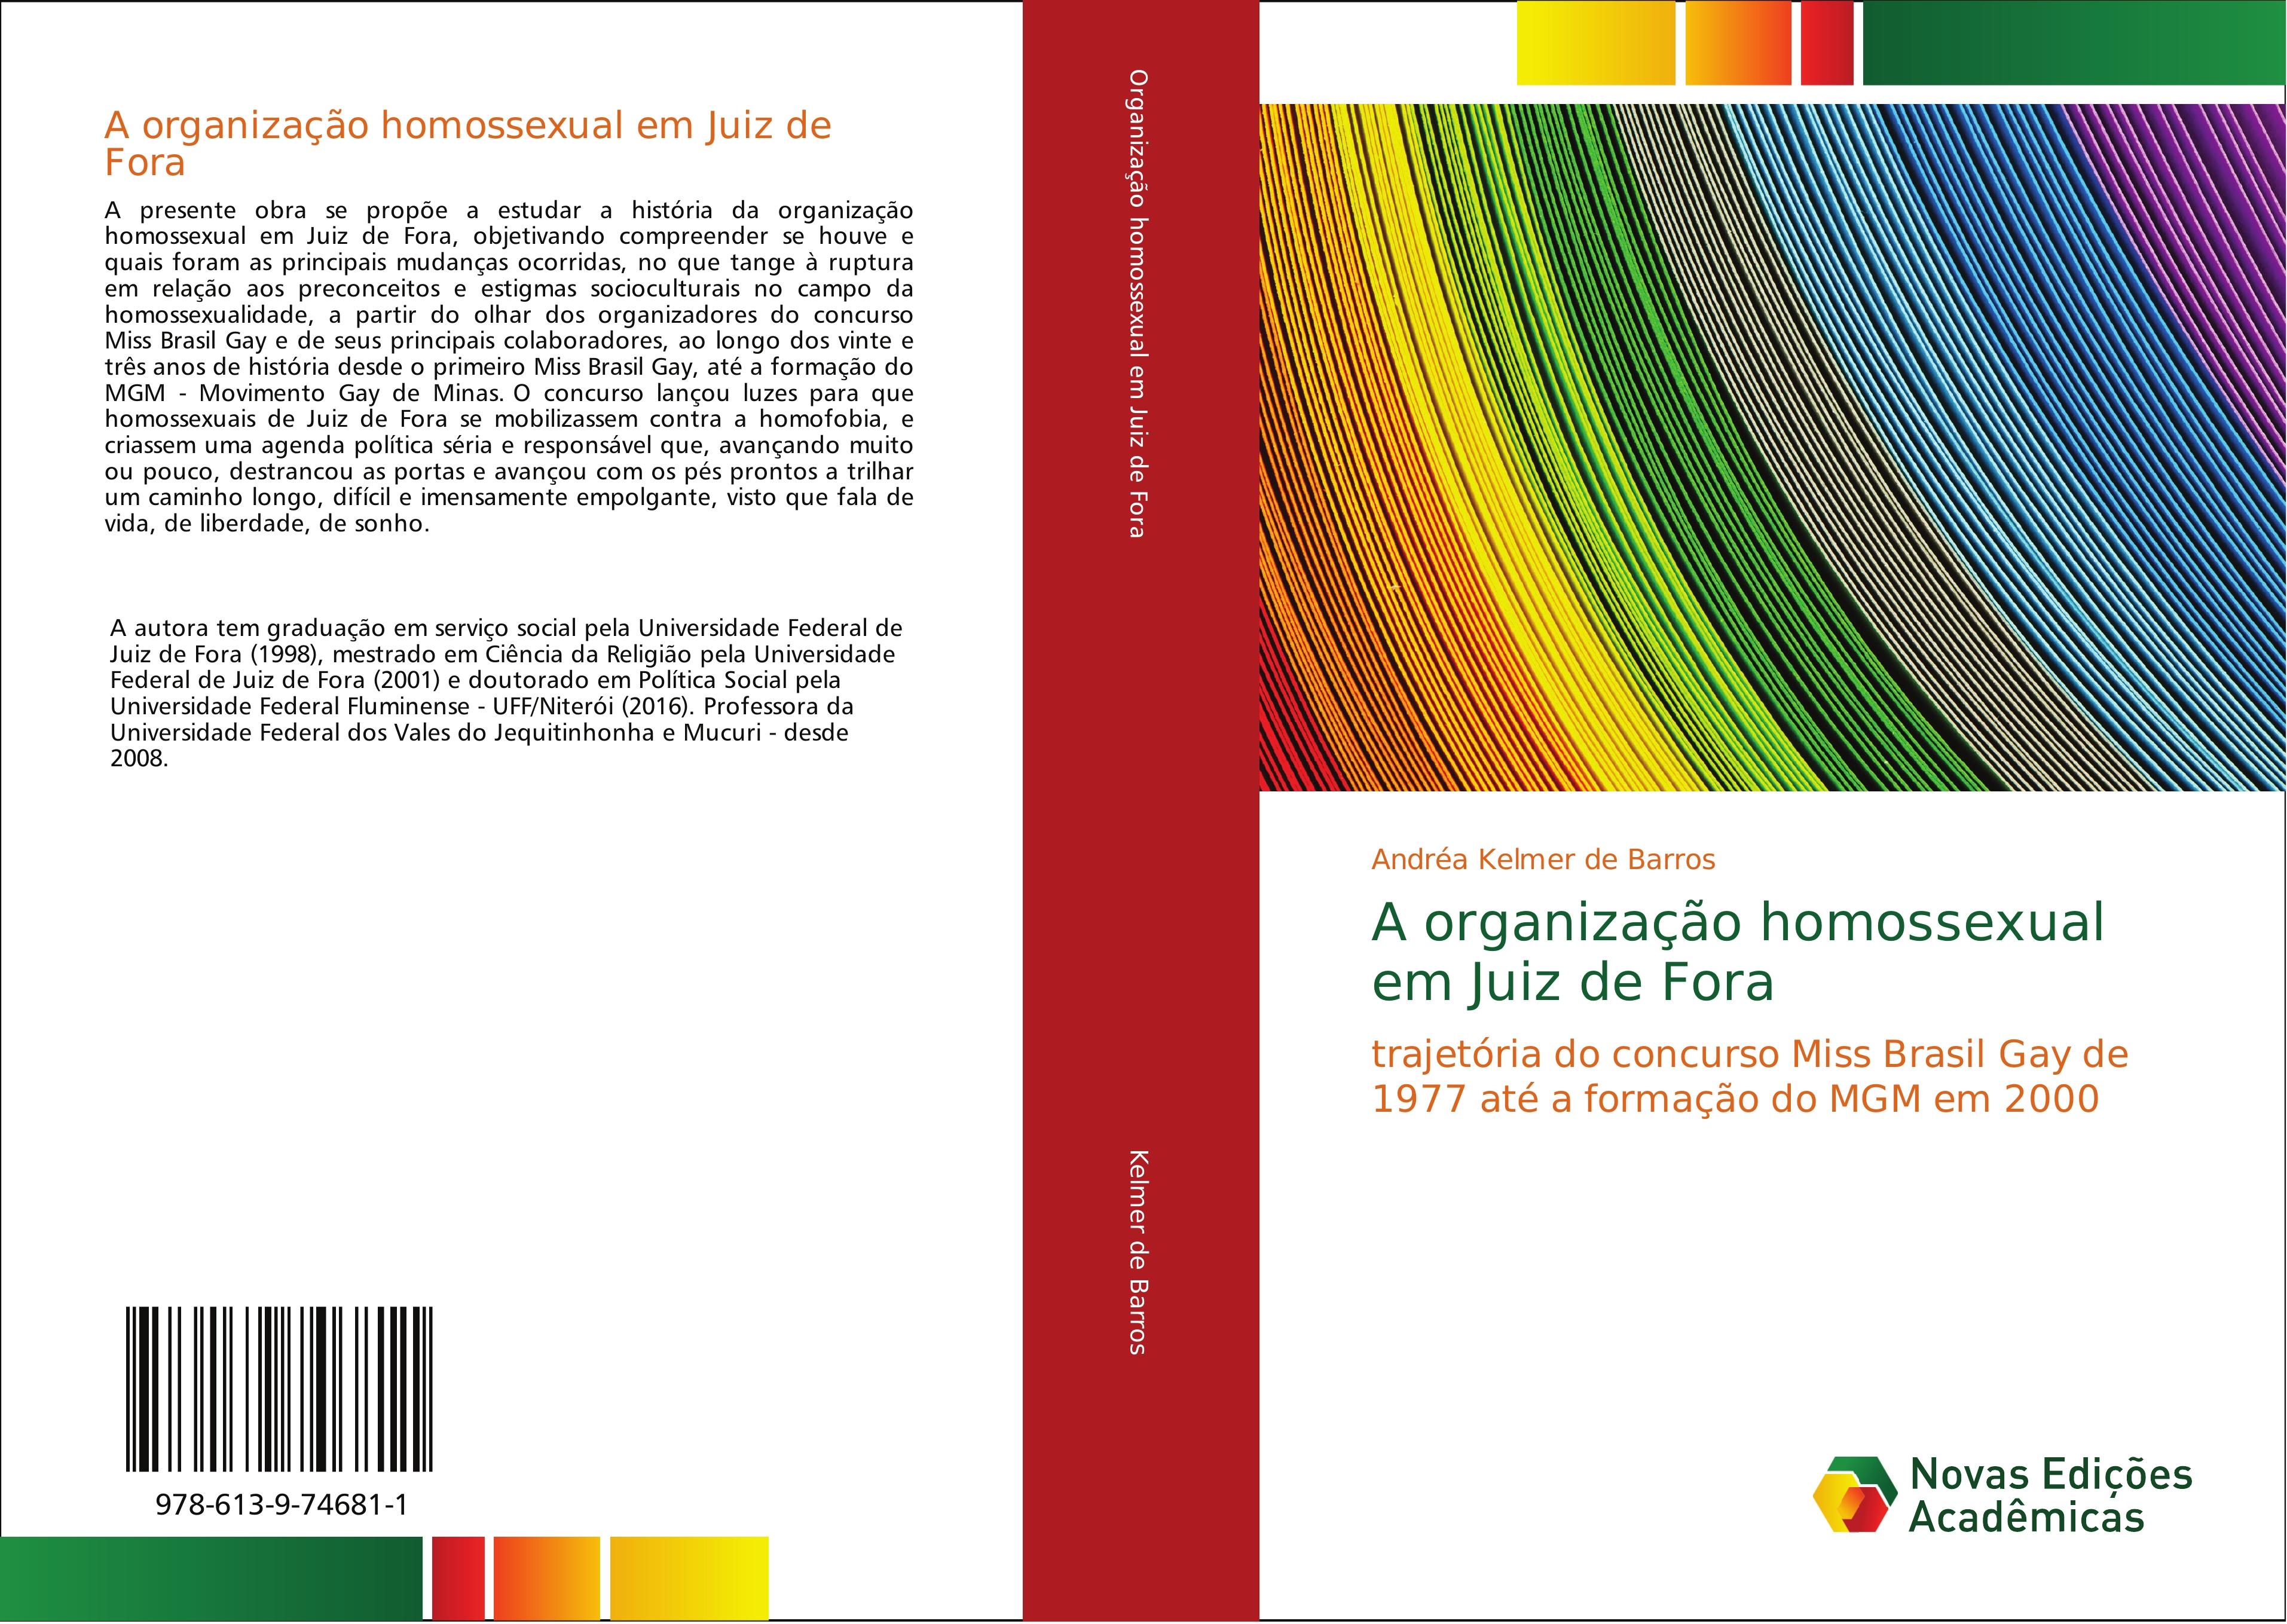 A organização homossexual em Juiz de Fora - Andréa Kelmer de Barros